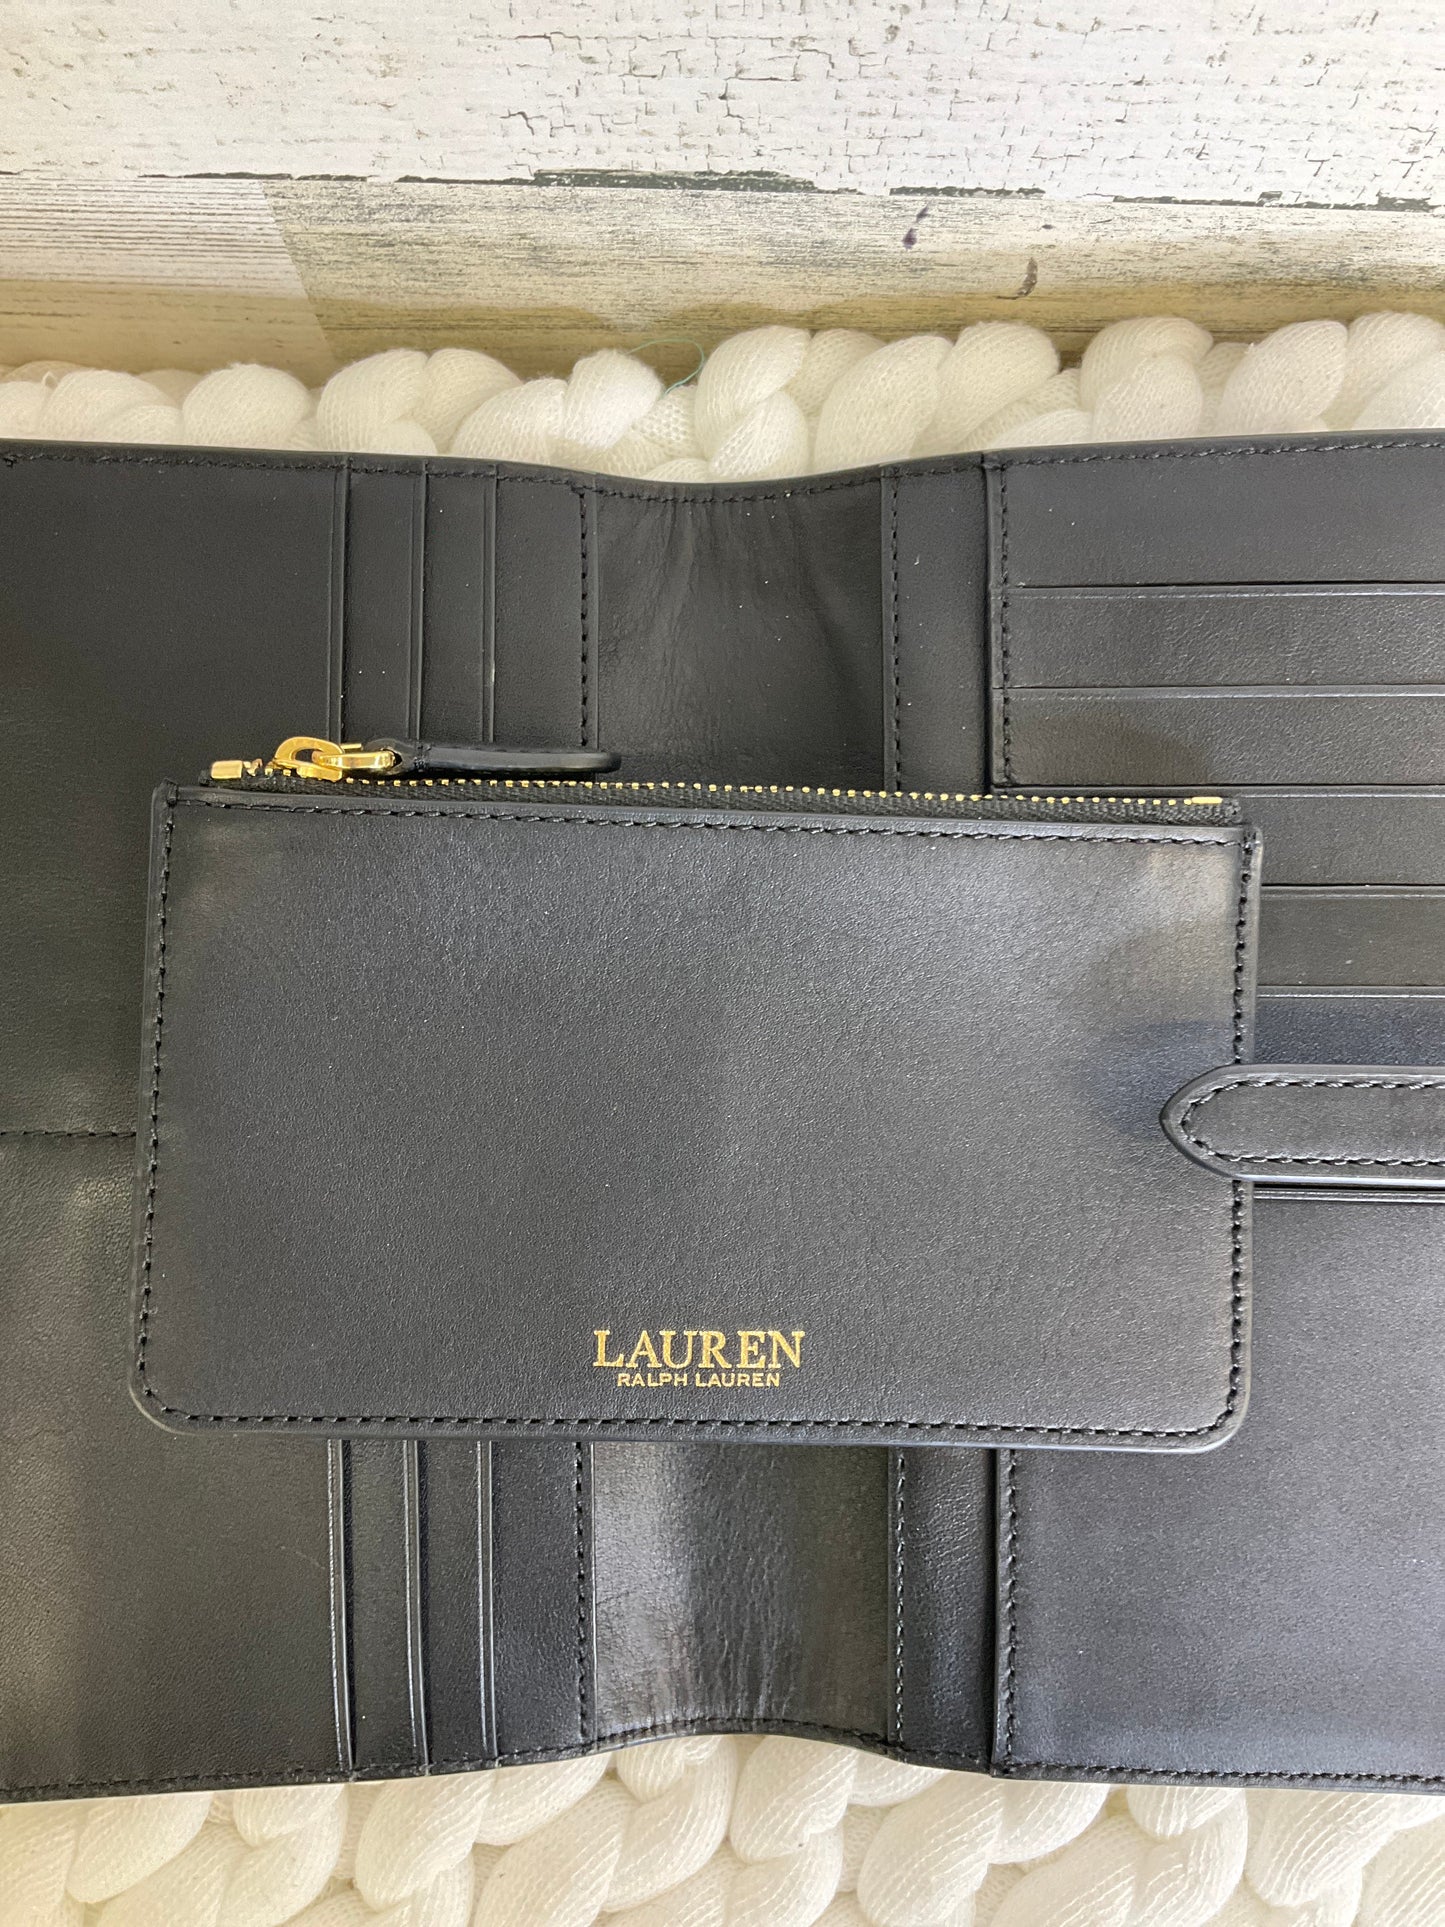 Wallet Leather Ralph Lauren, Size Large